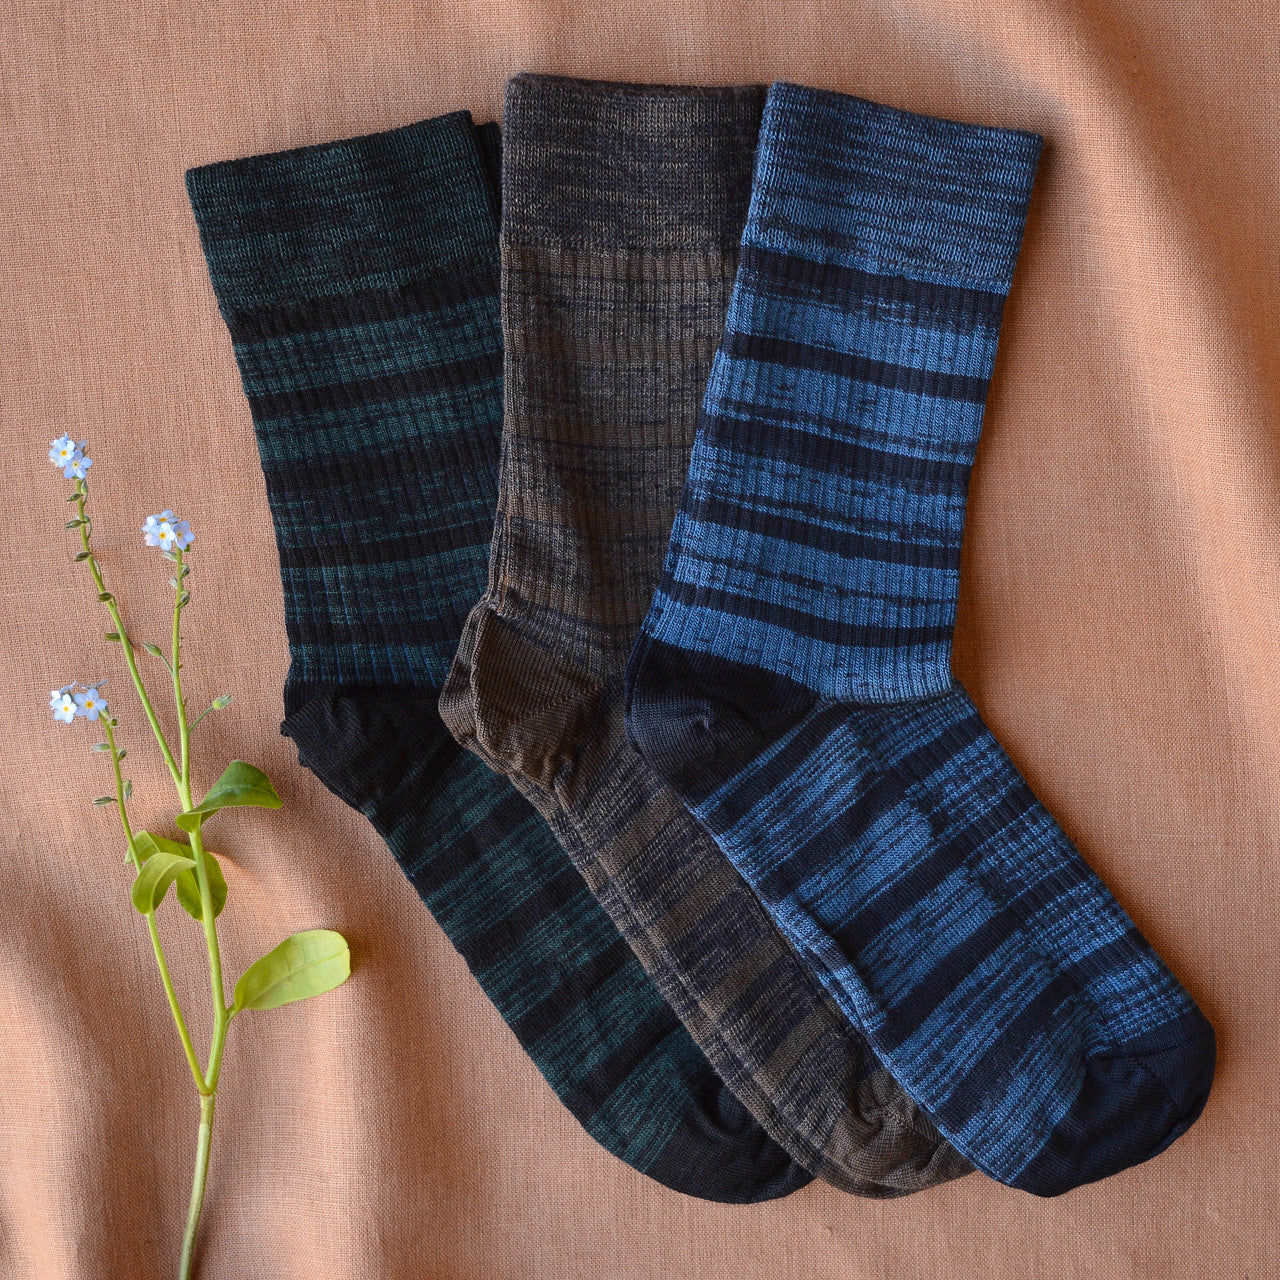 FUB Merino Wool Socks - Stripes (Adults)